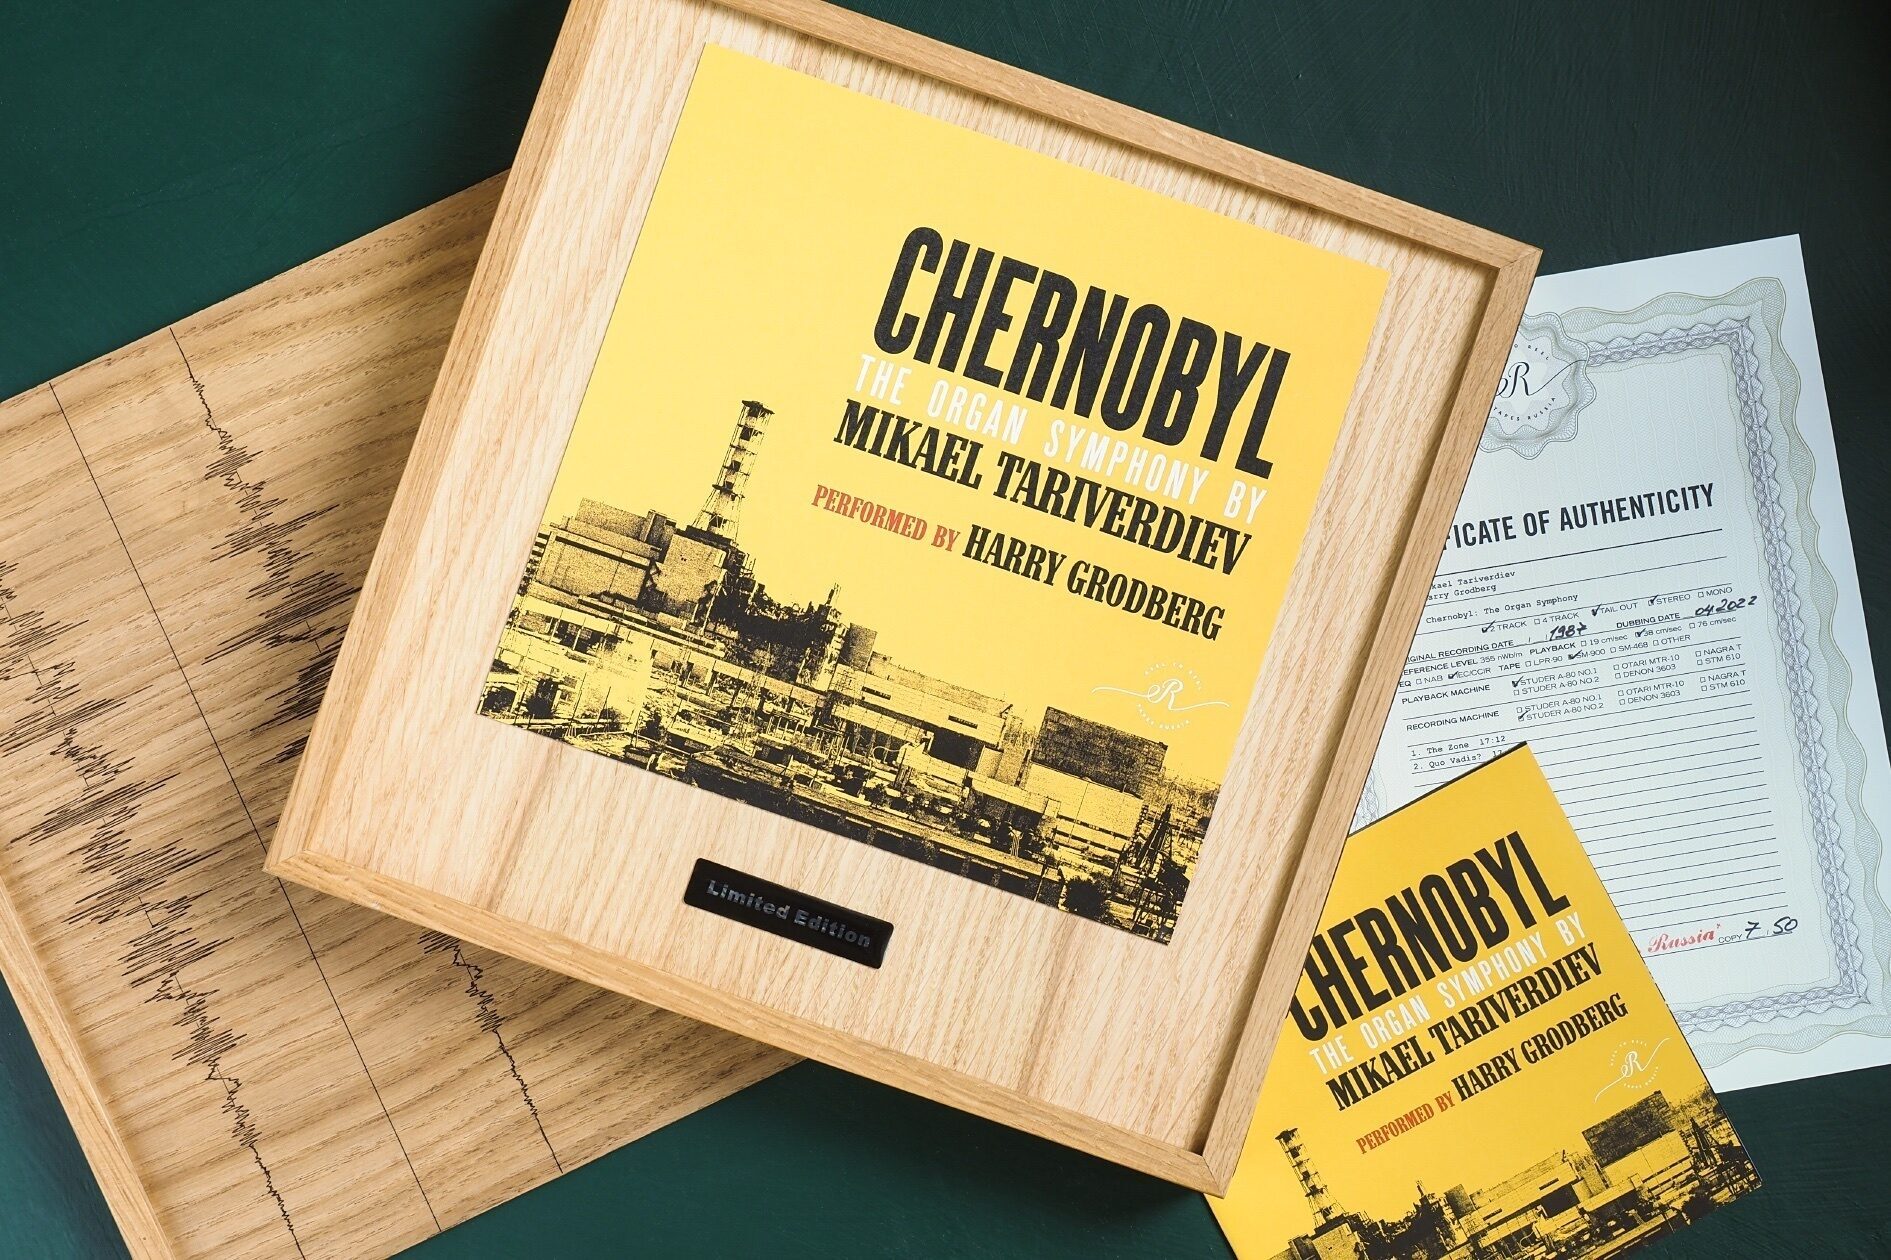 «Чернобыль» Микаэля Таривердиева — сложно о сложном